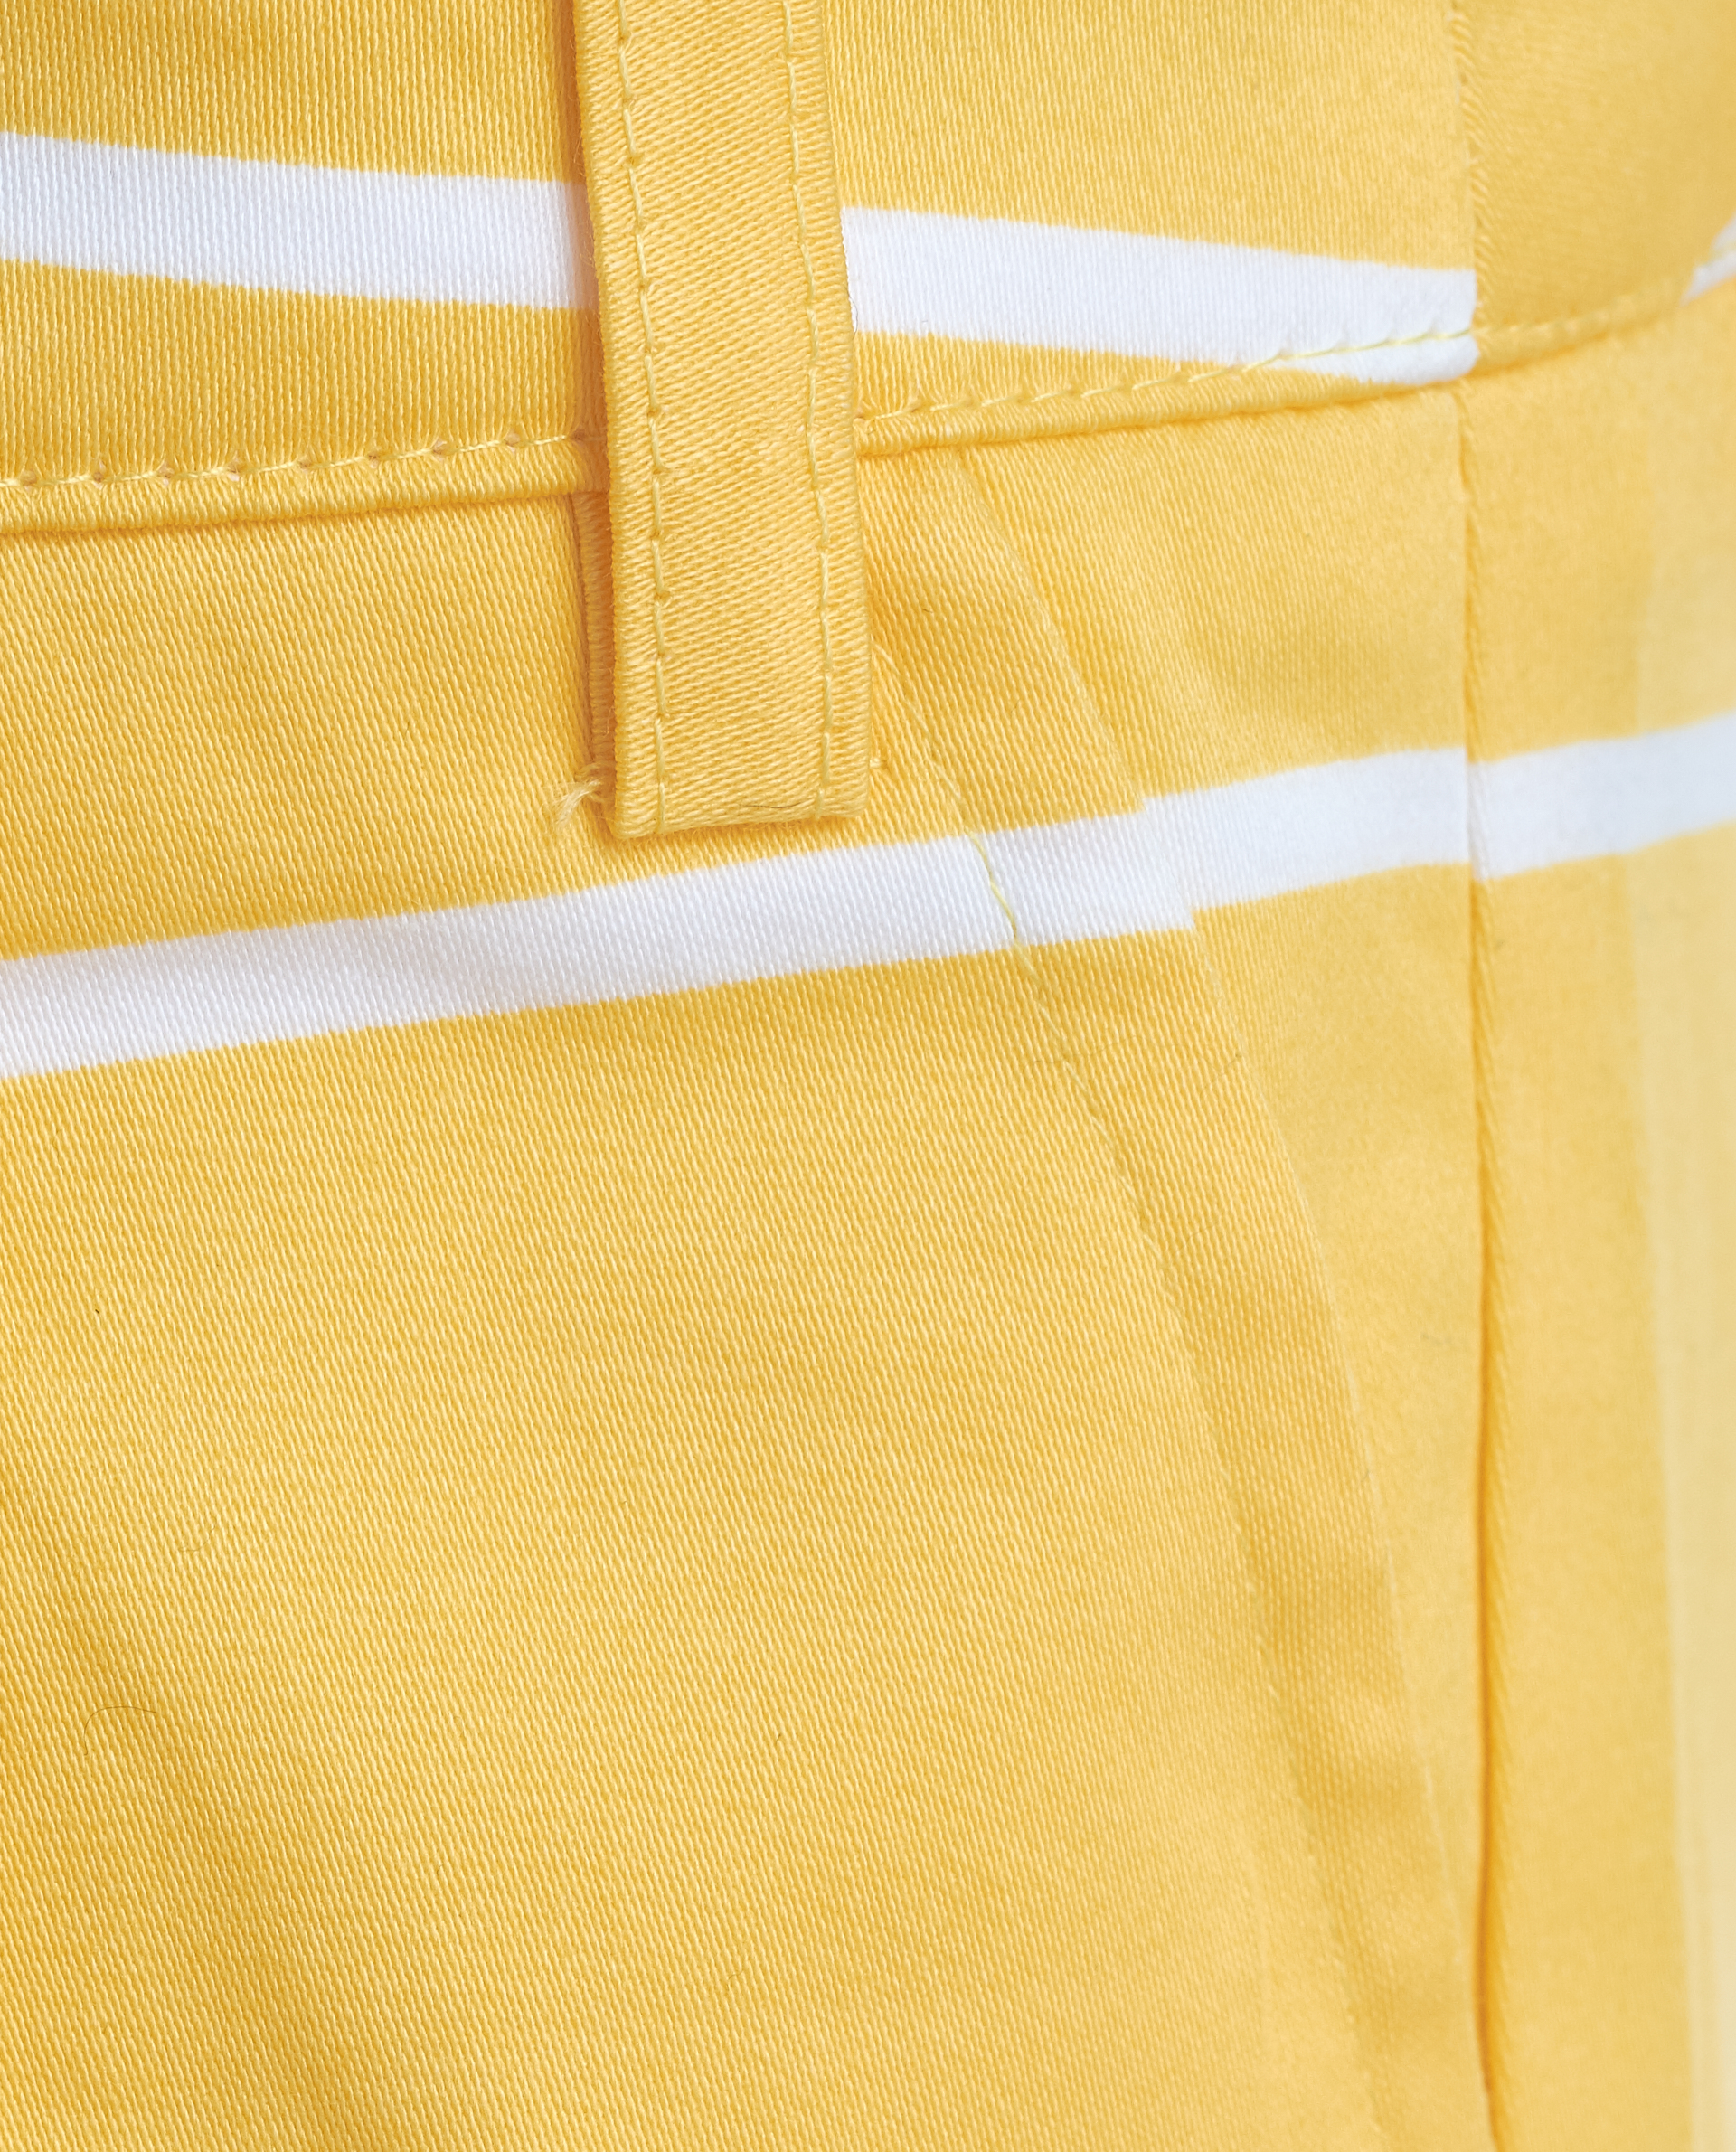 Желтые шорты Gulliver 11901GMC6003, размер 116, цвет желтый - фото 4